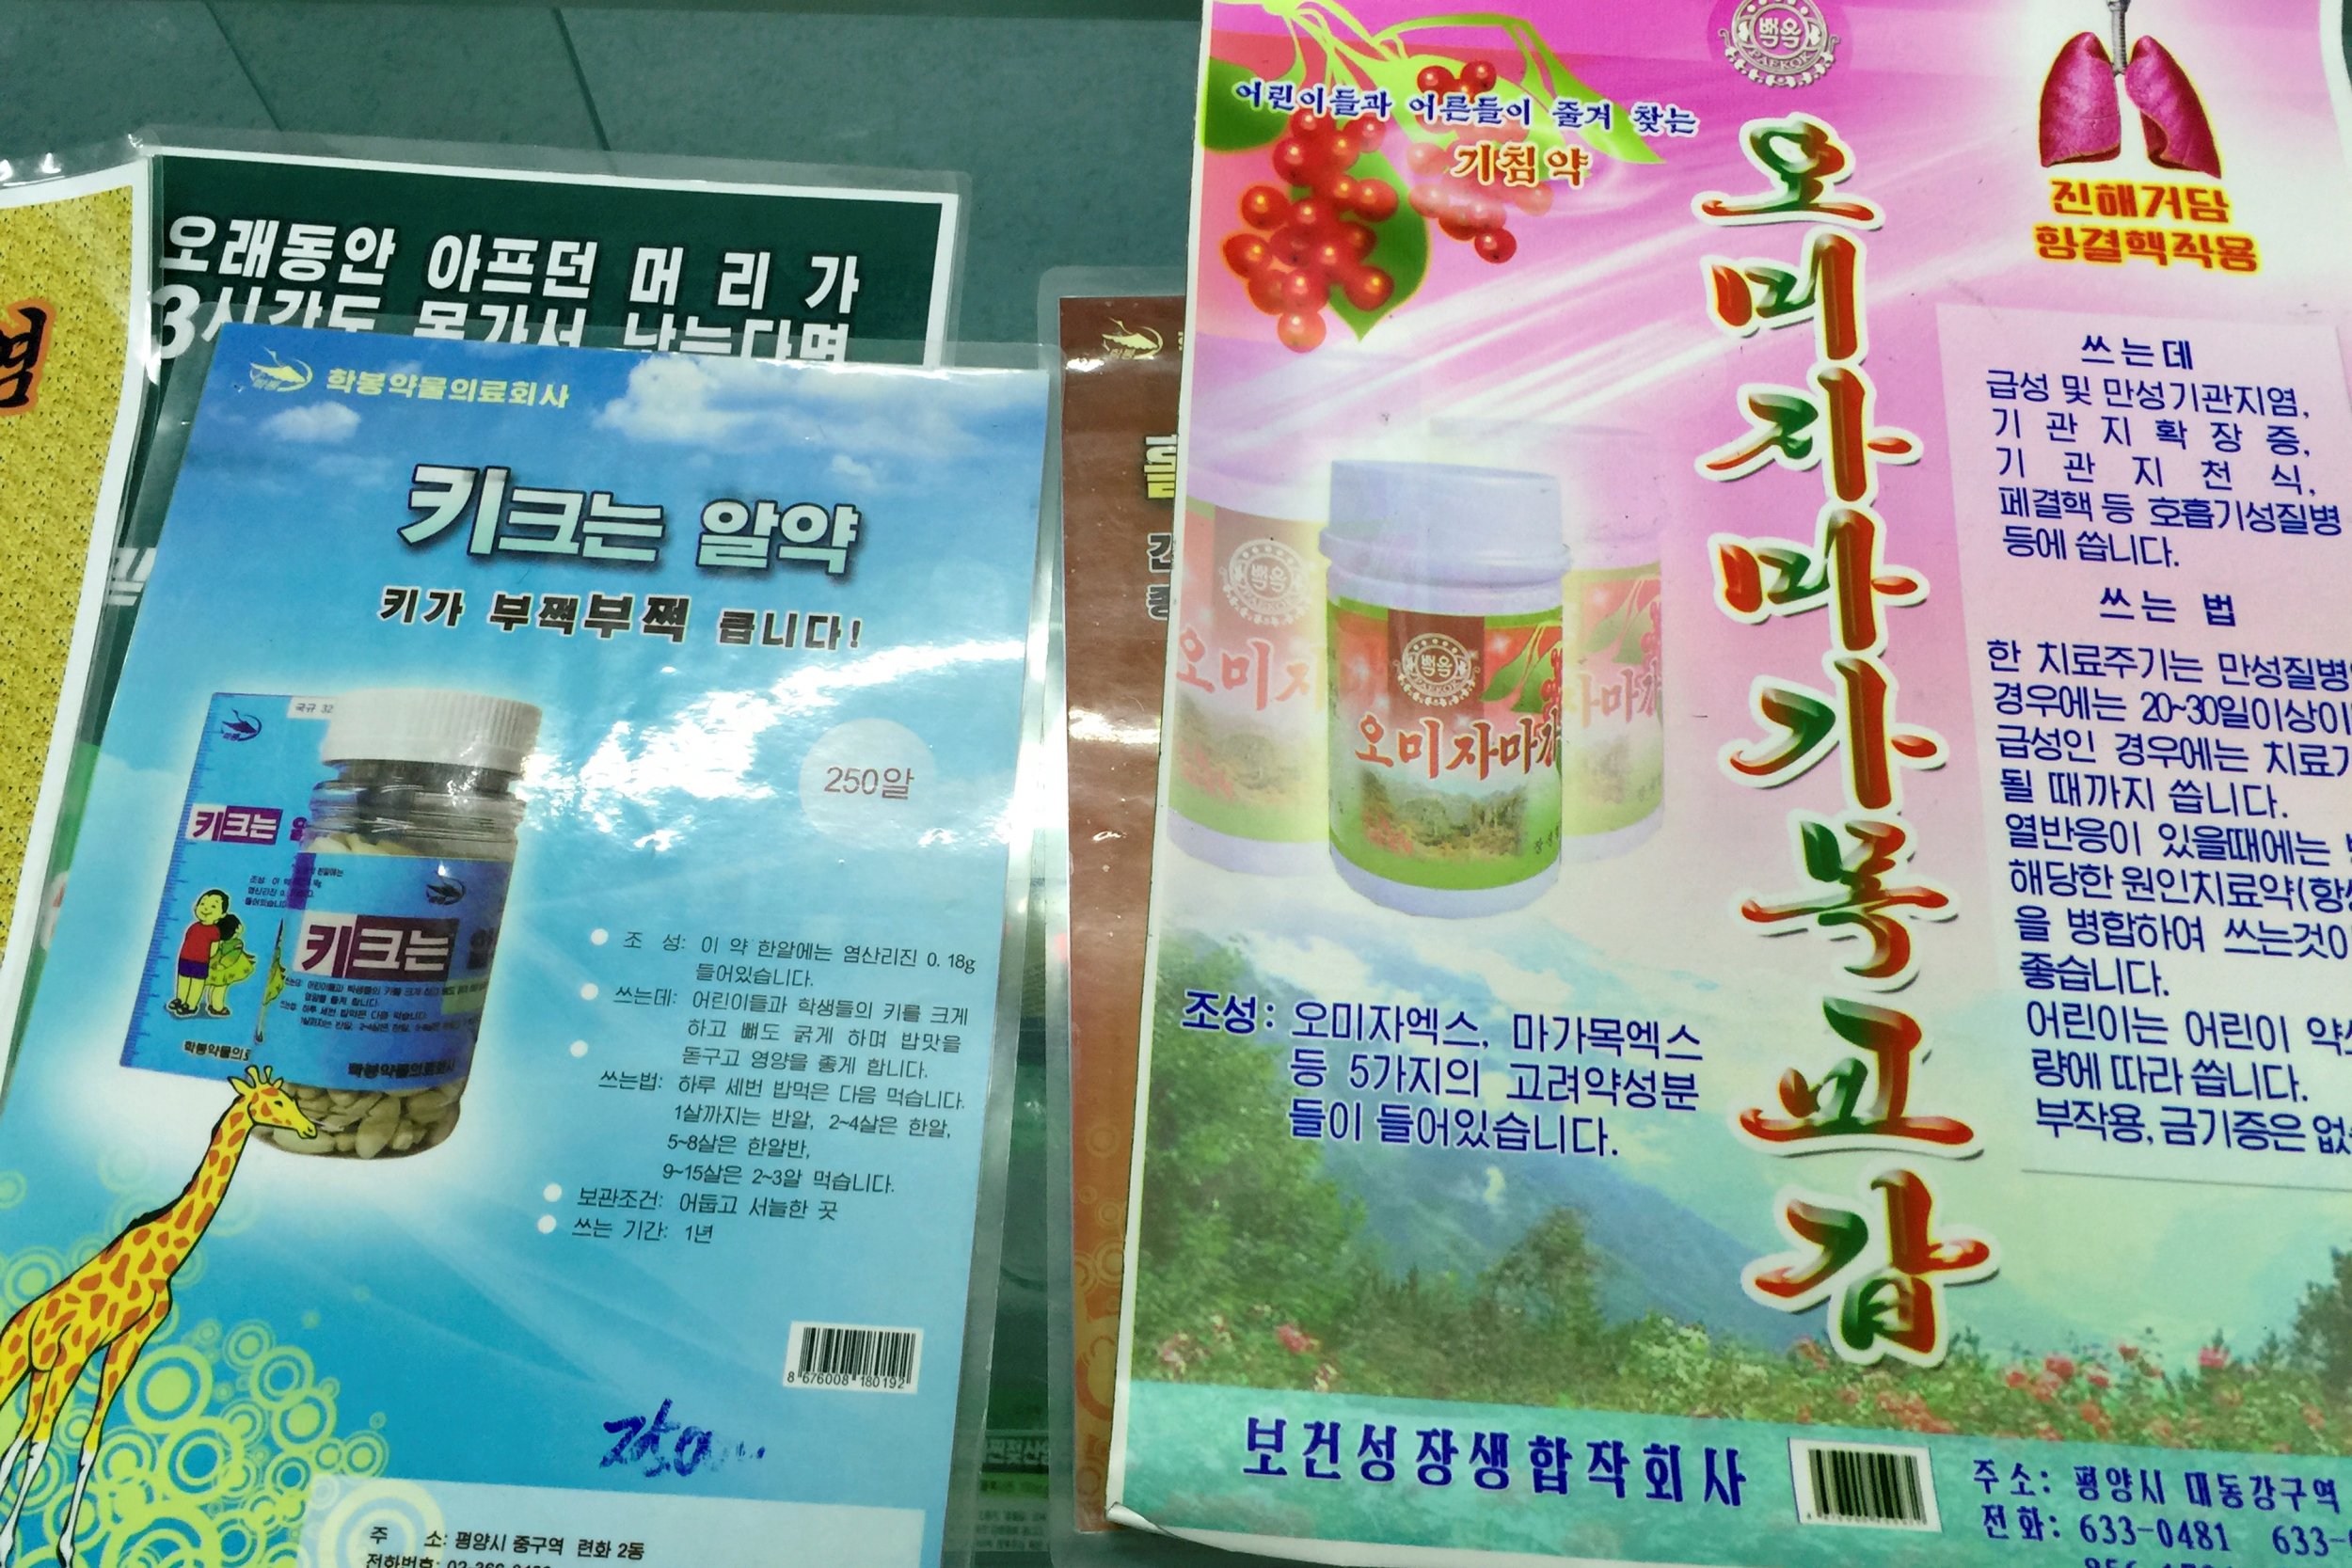 05_17_North_Korea_ads_01